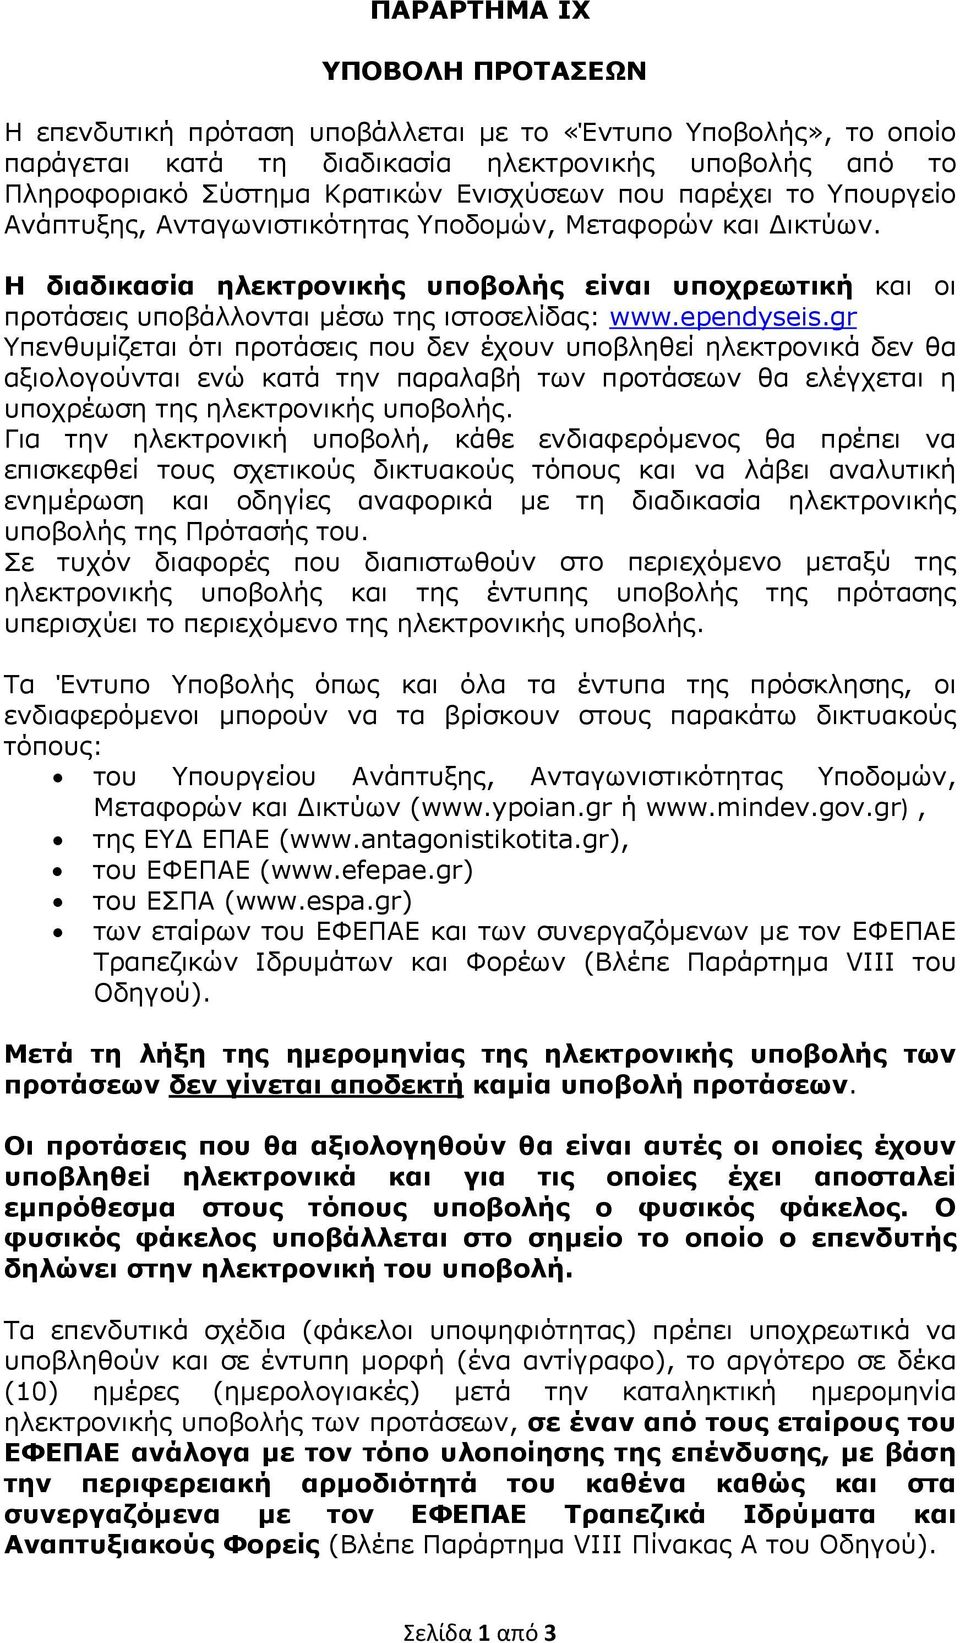 ependyseis.gr Υπενθυμίζεται ότι προτάσεις που δεν έχουν υποβληθεί ηλεκτρονικά δεν θα αξιολογούνται ενώ κατά την παραλαβή των προτάσεων θα ελέγχεται η υποχρέωση της ηλεκτρονικής υποβολής.